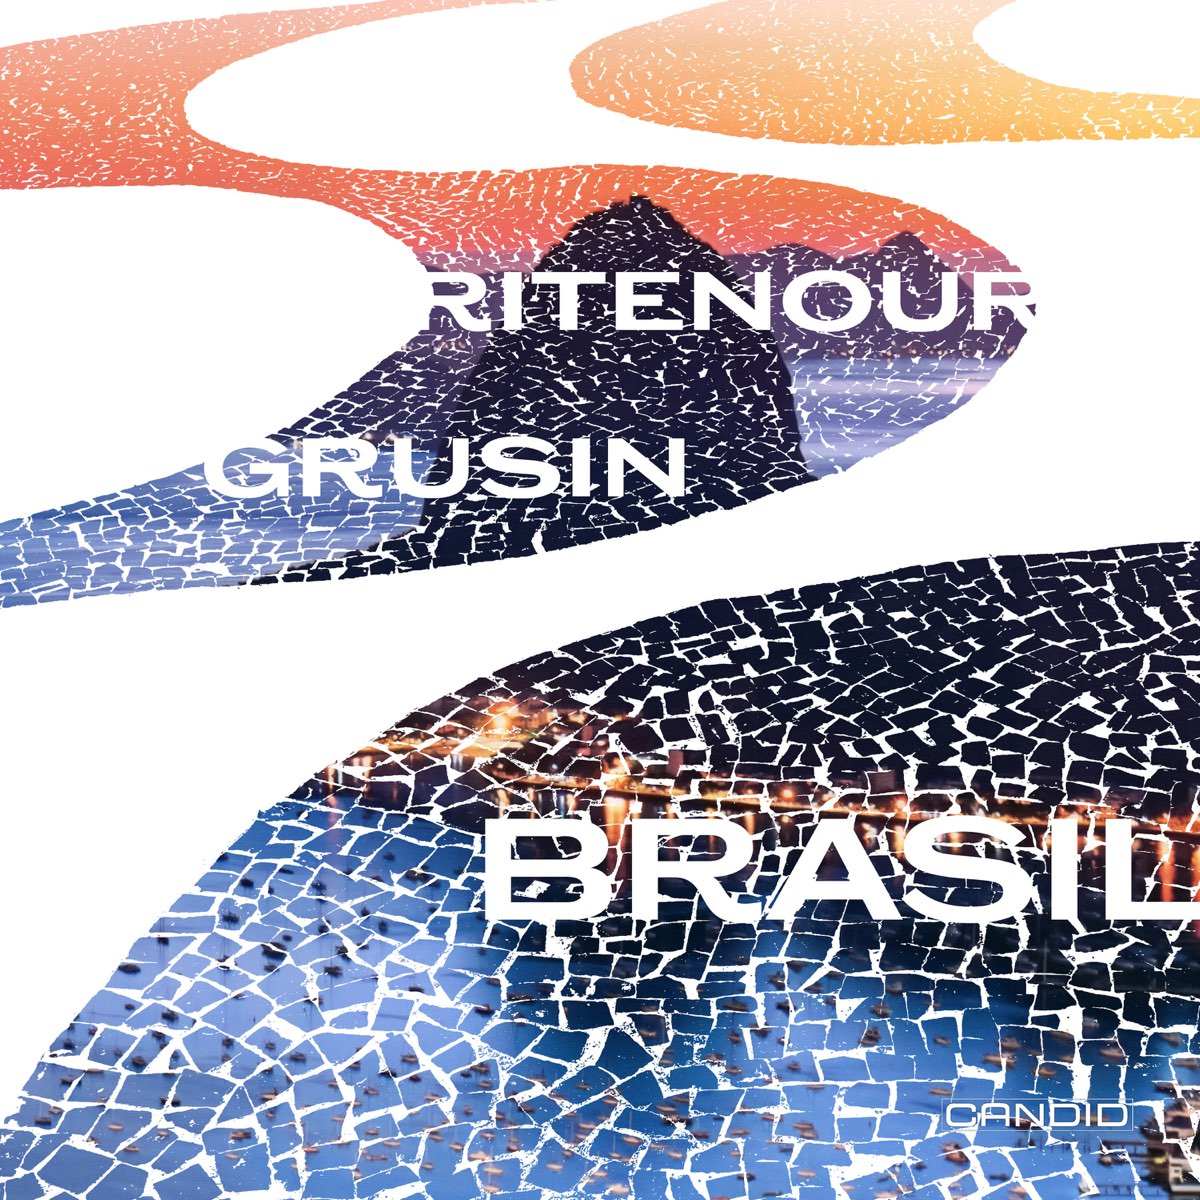 Lee Ritenour & Dave Grusin – Brasil